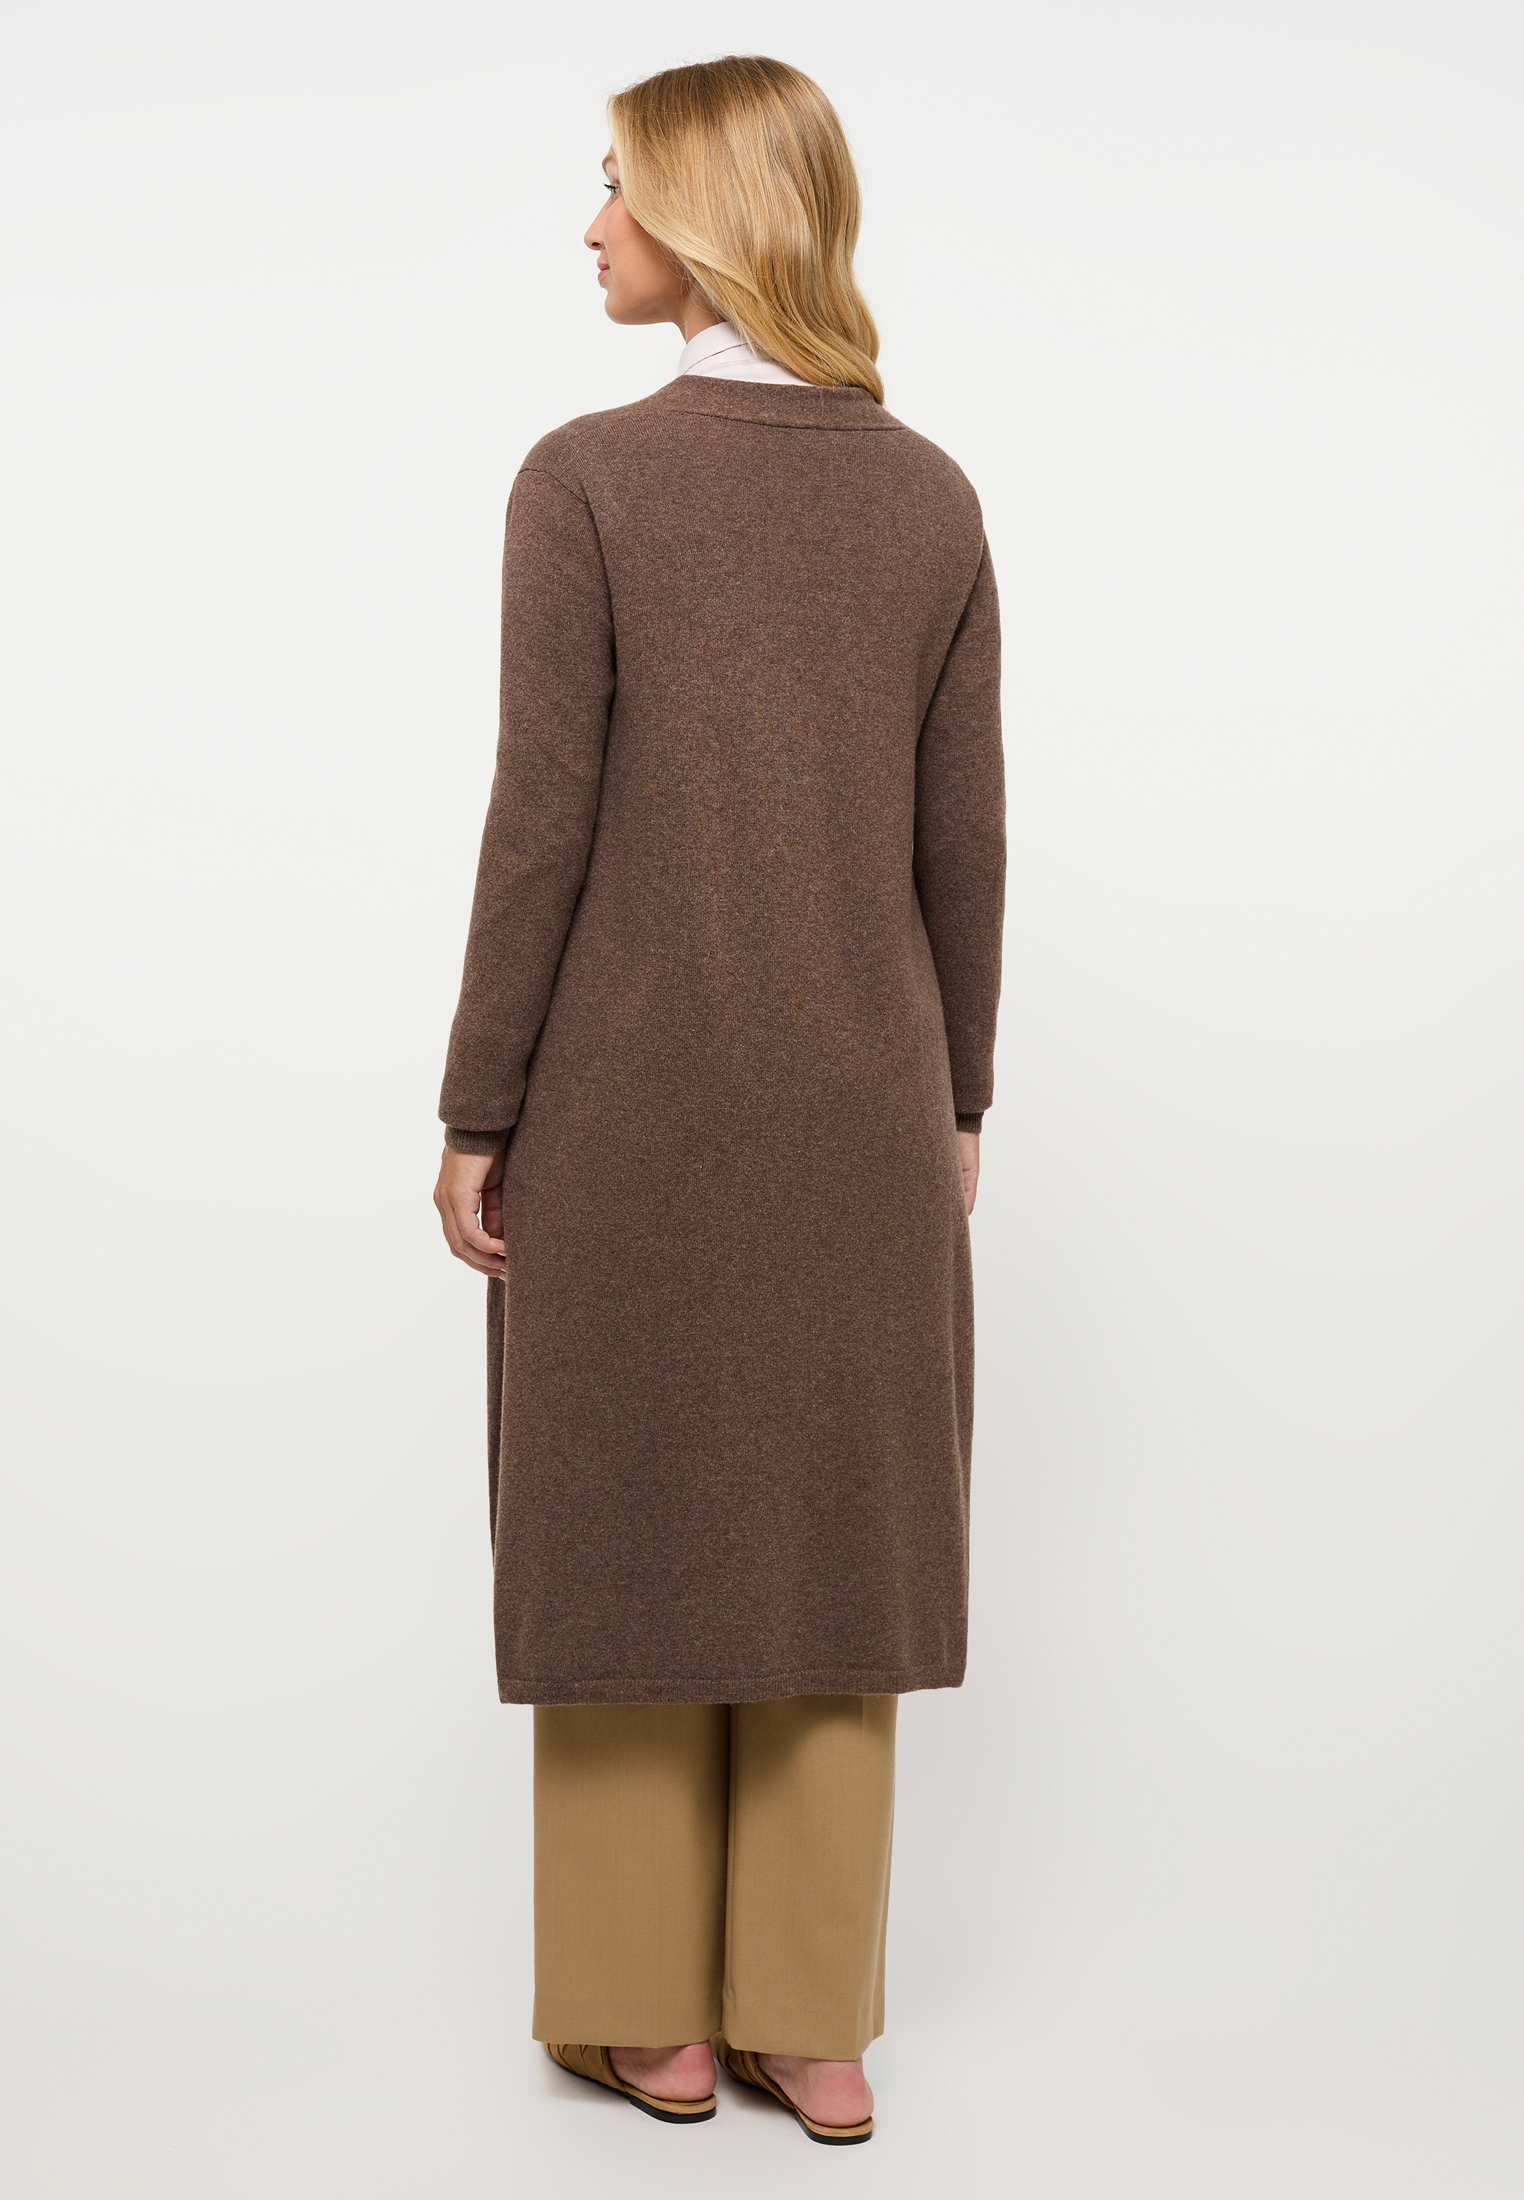 Knitted cardigan in dark brown plain dark | brown 2XL | 2KN00093-02-92-2XL 